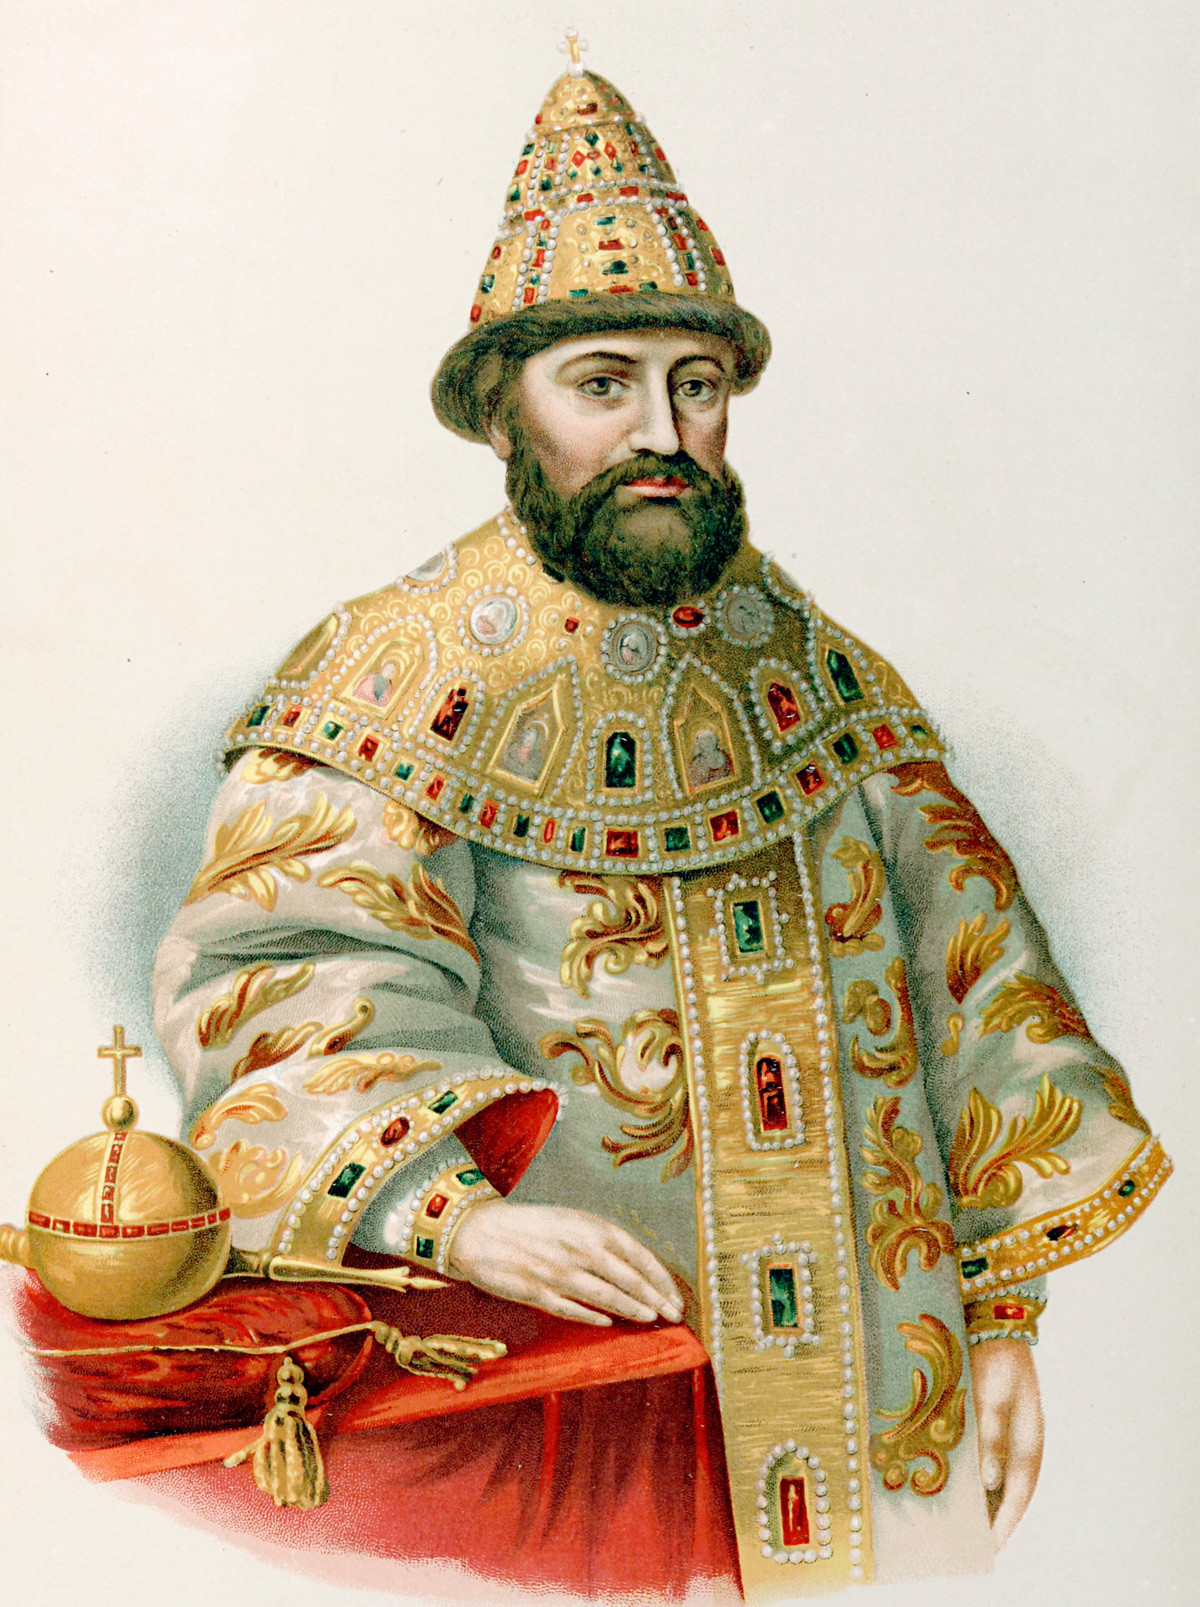 Михаил Фјодорович (12. јул 1596 – 13. јул 1645), први руски цар династије Романов.